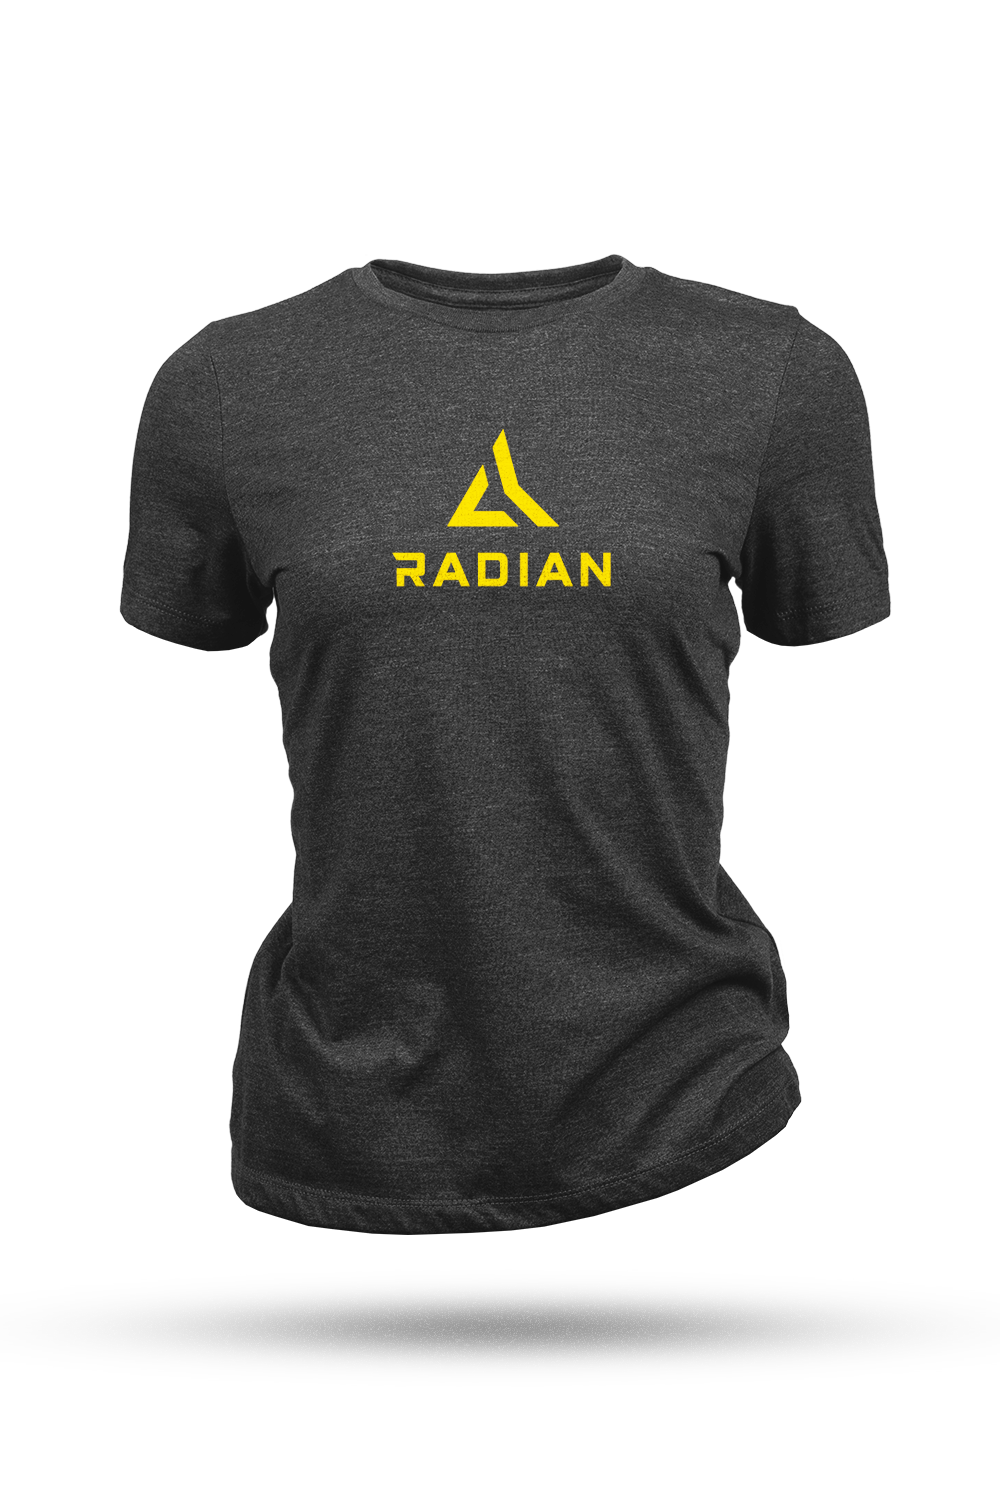 Radian Women's Stacked Logo Tee Shirt